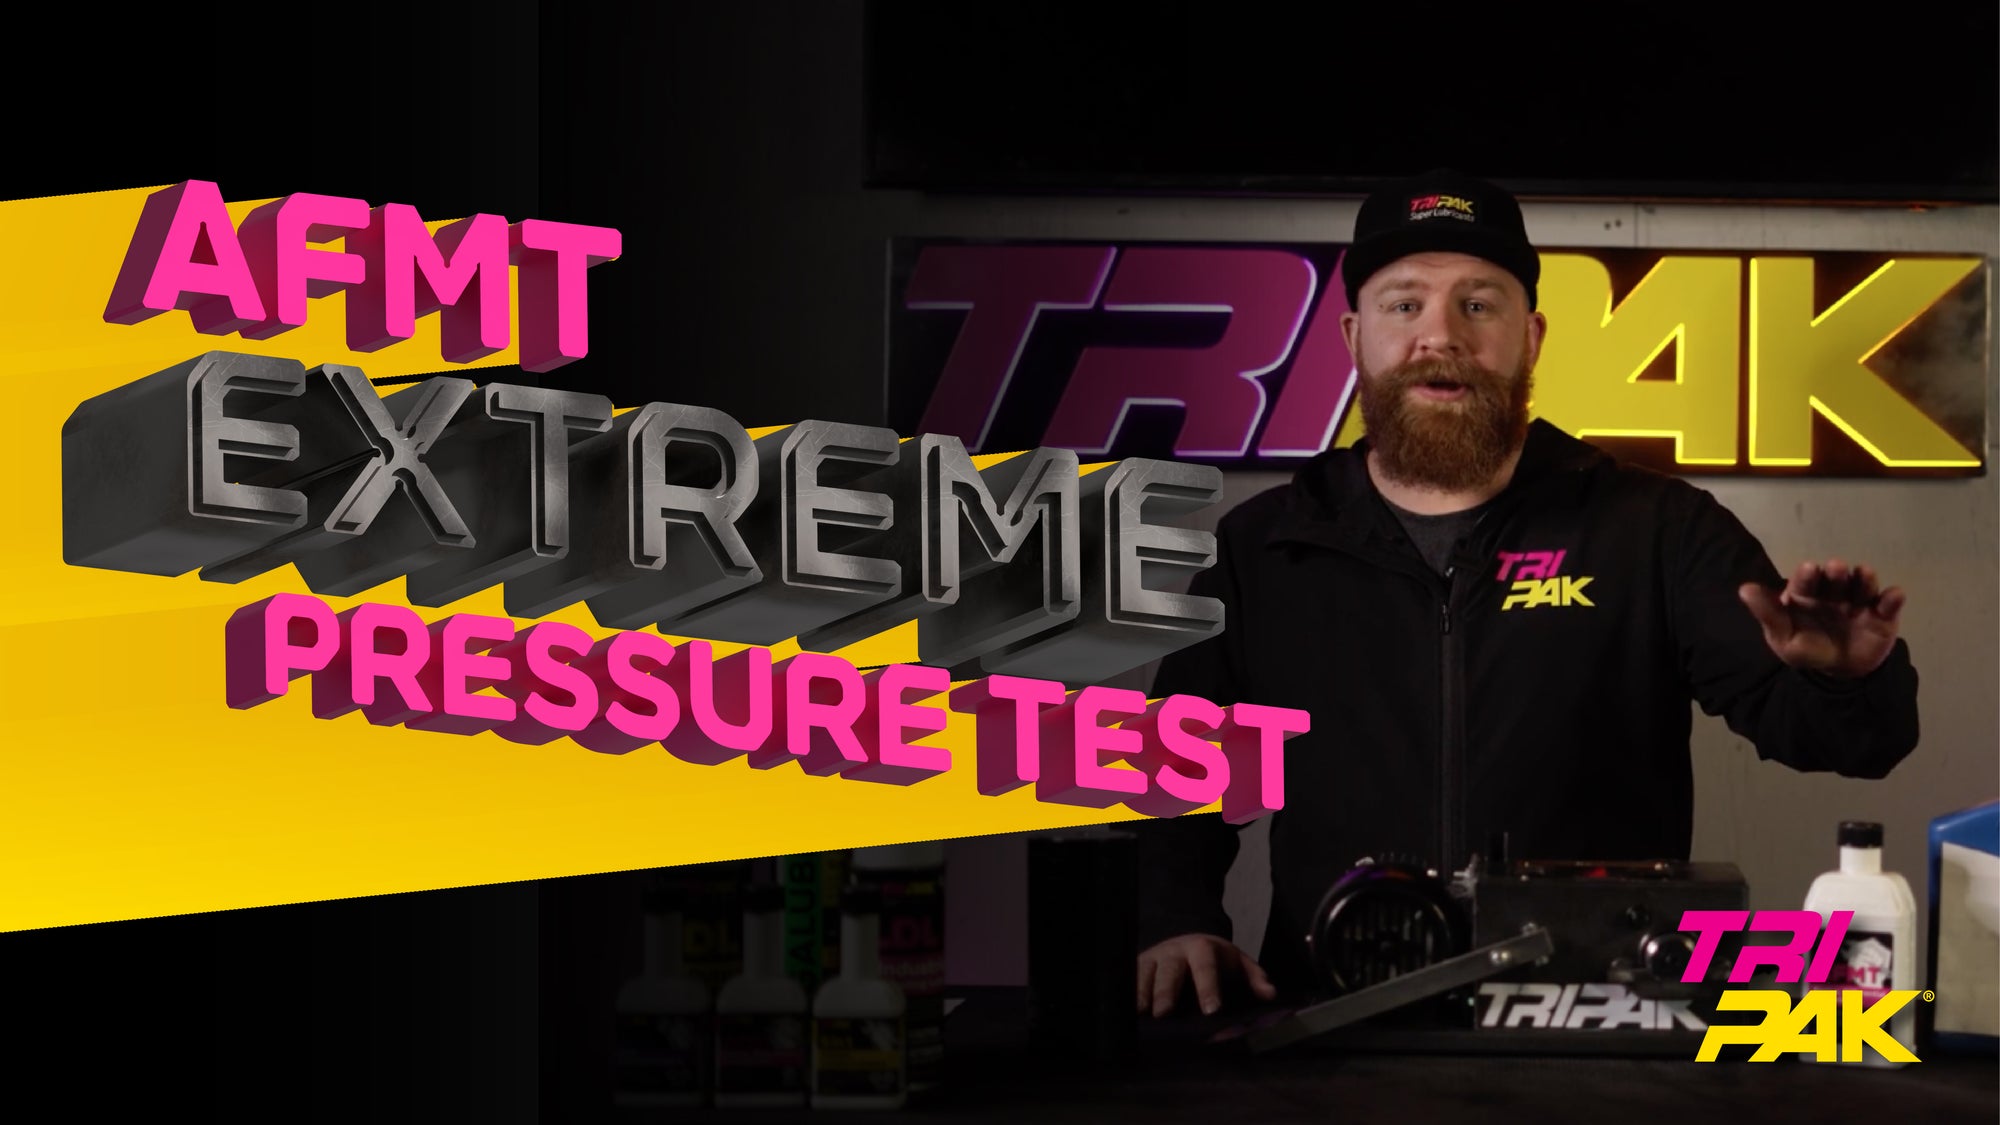 AFMT Extreme Pressure Test